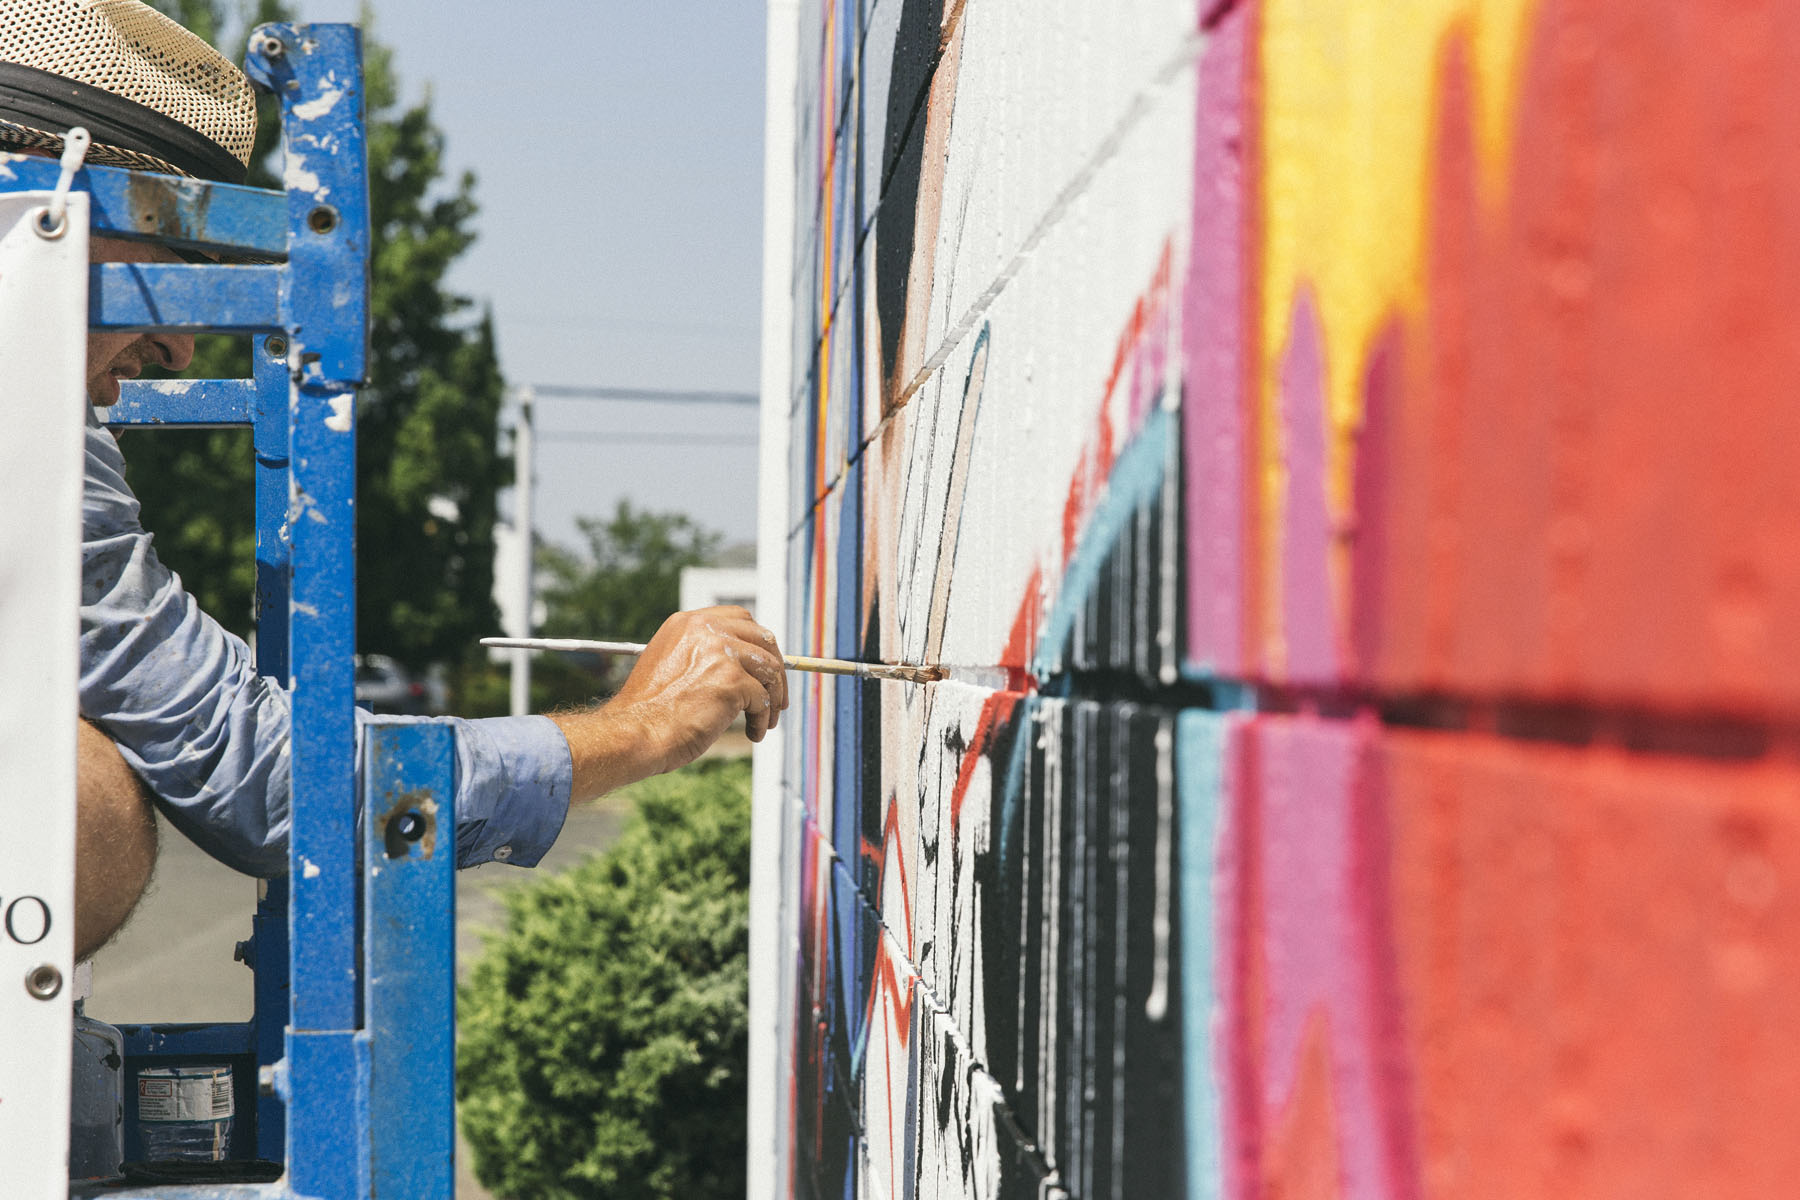 Jeff Musser Wide Open Walls mural festival Luke Shirlaw Ironlak